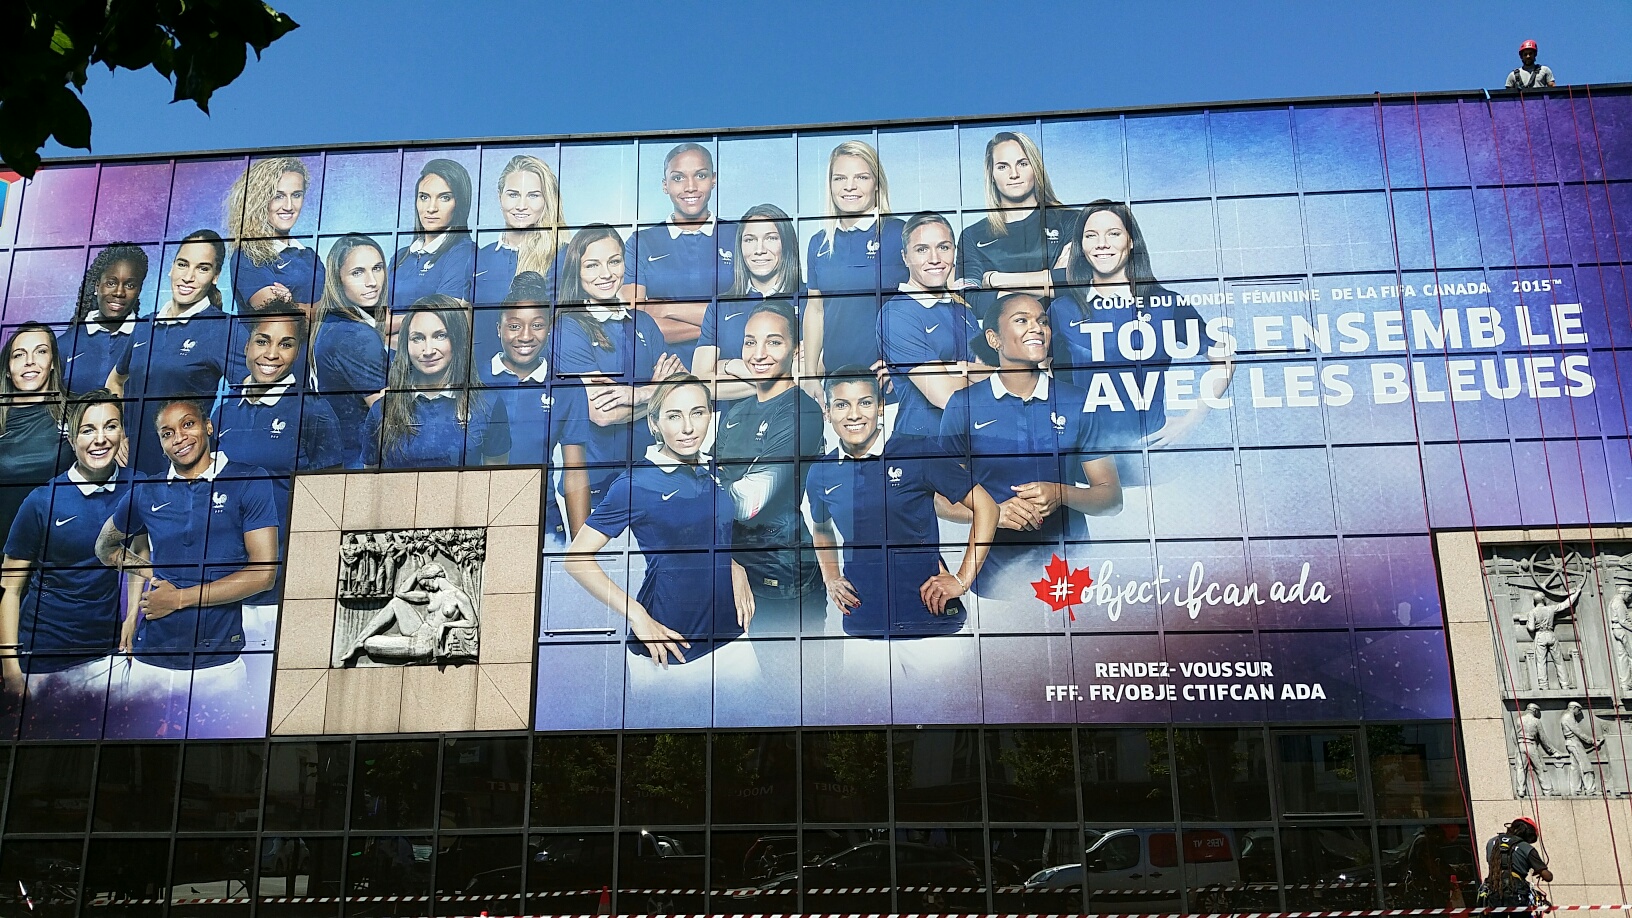 objectif canada FFF équipe de france féminine coupe du monde 2015 tous ensemble avec les bleues